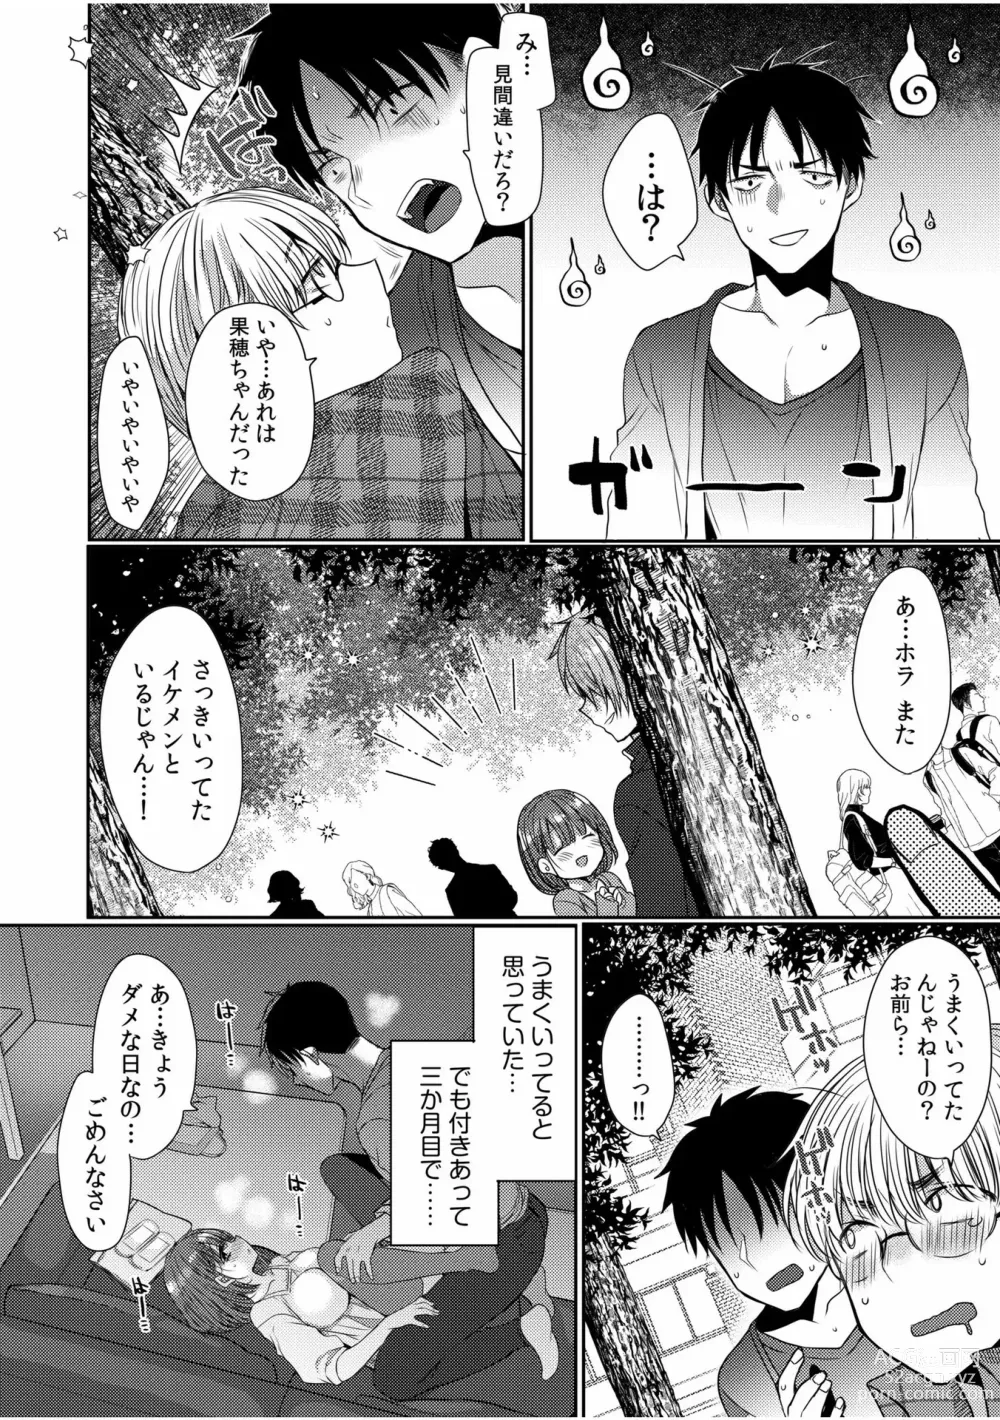 Page 14 of manga 「Zettai ni kimi o hanasanai」Aishi au 2-ri wa nando mo hageshiku…